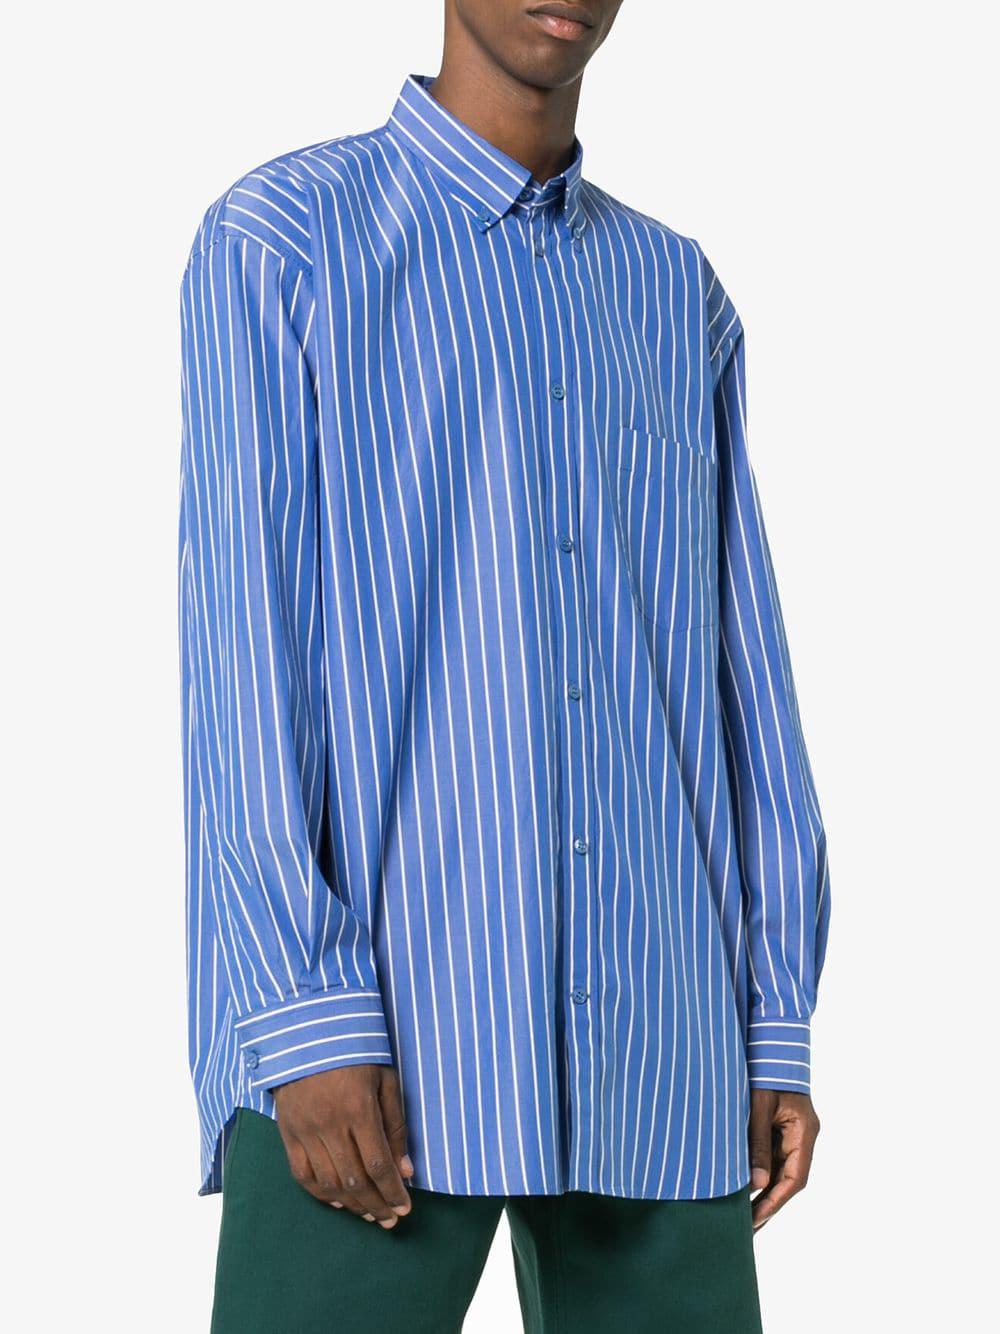 balenciaga blue striped shirt